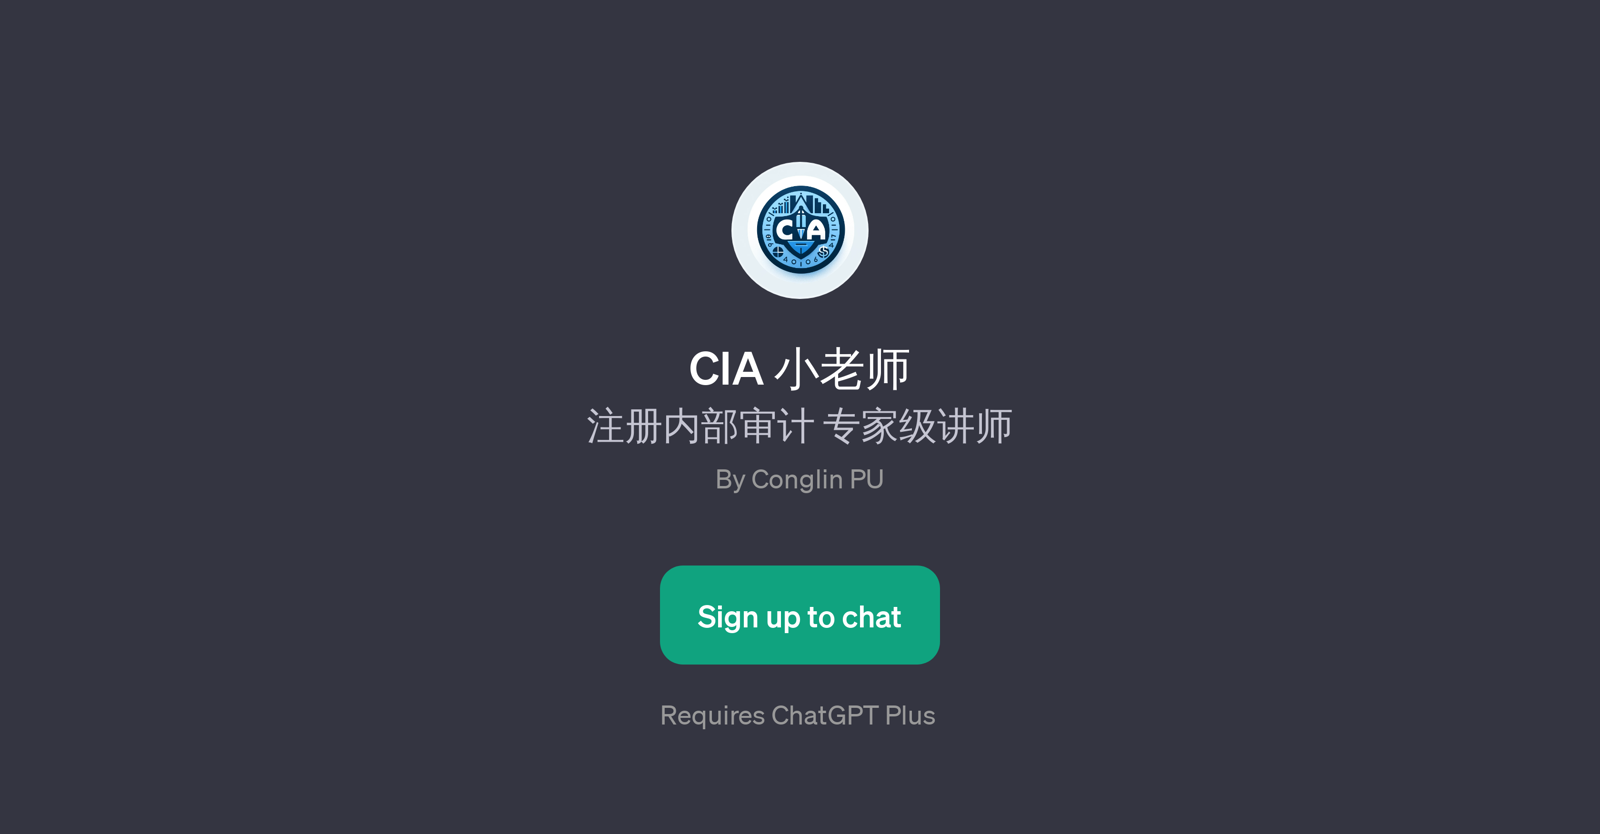 CIA website